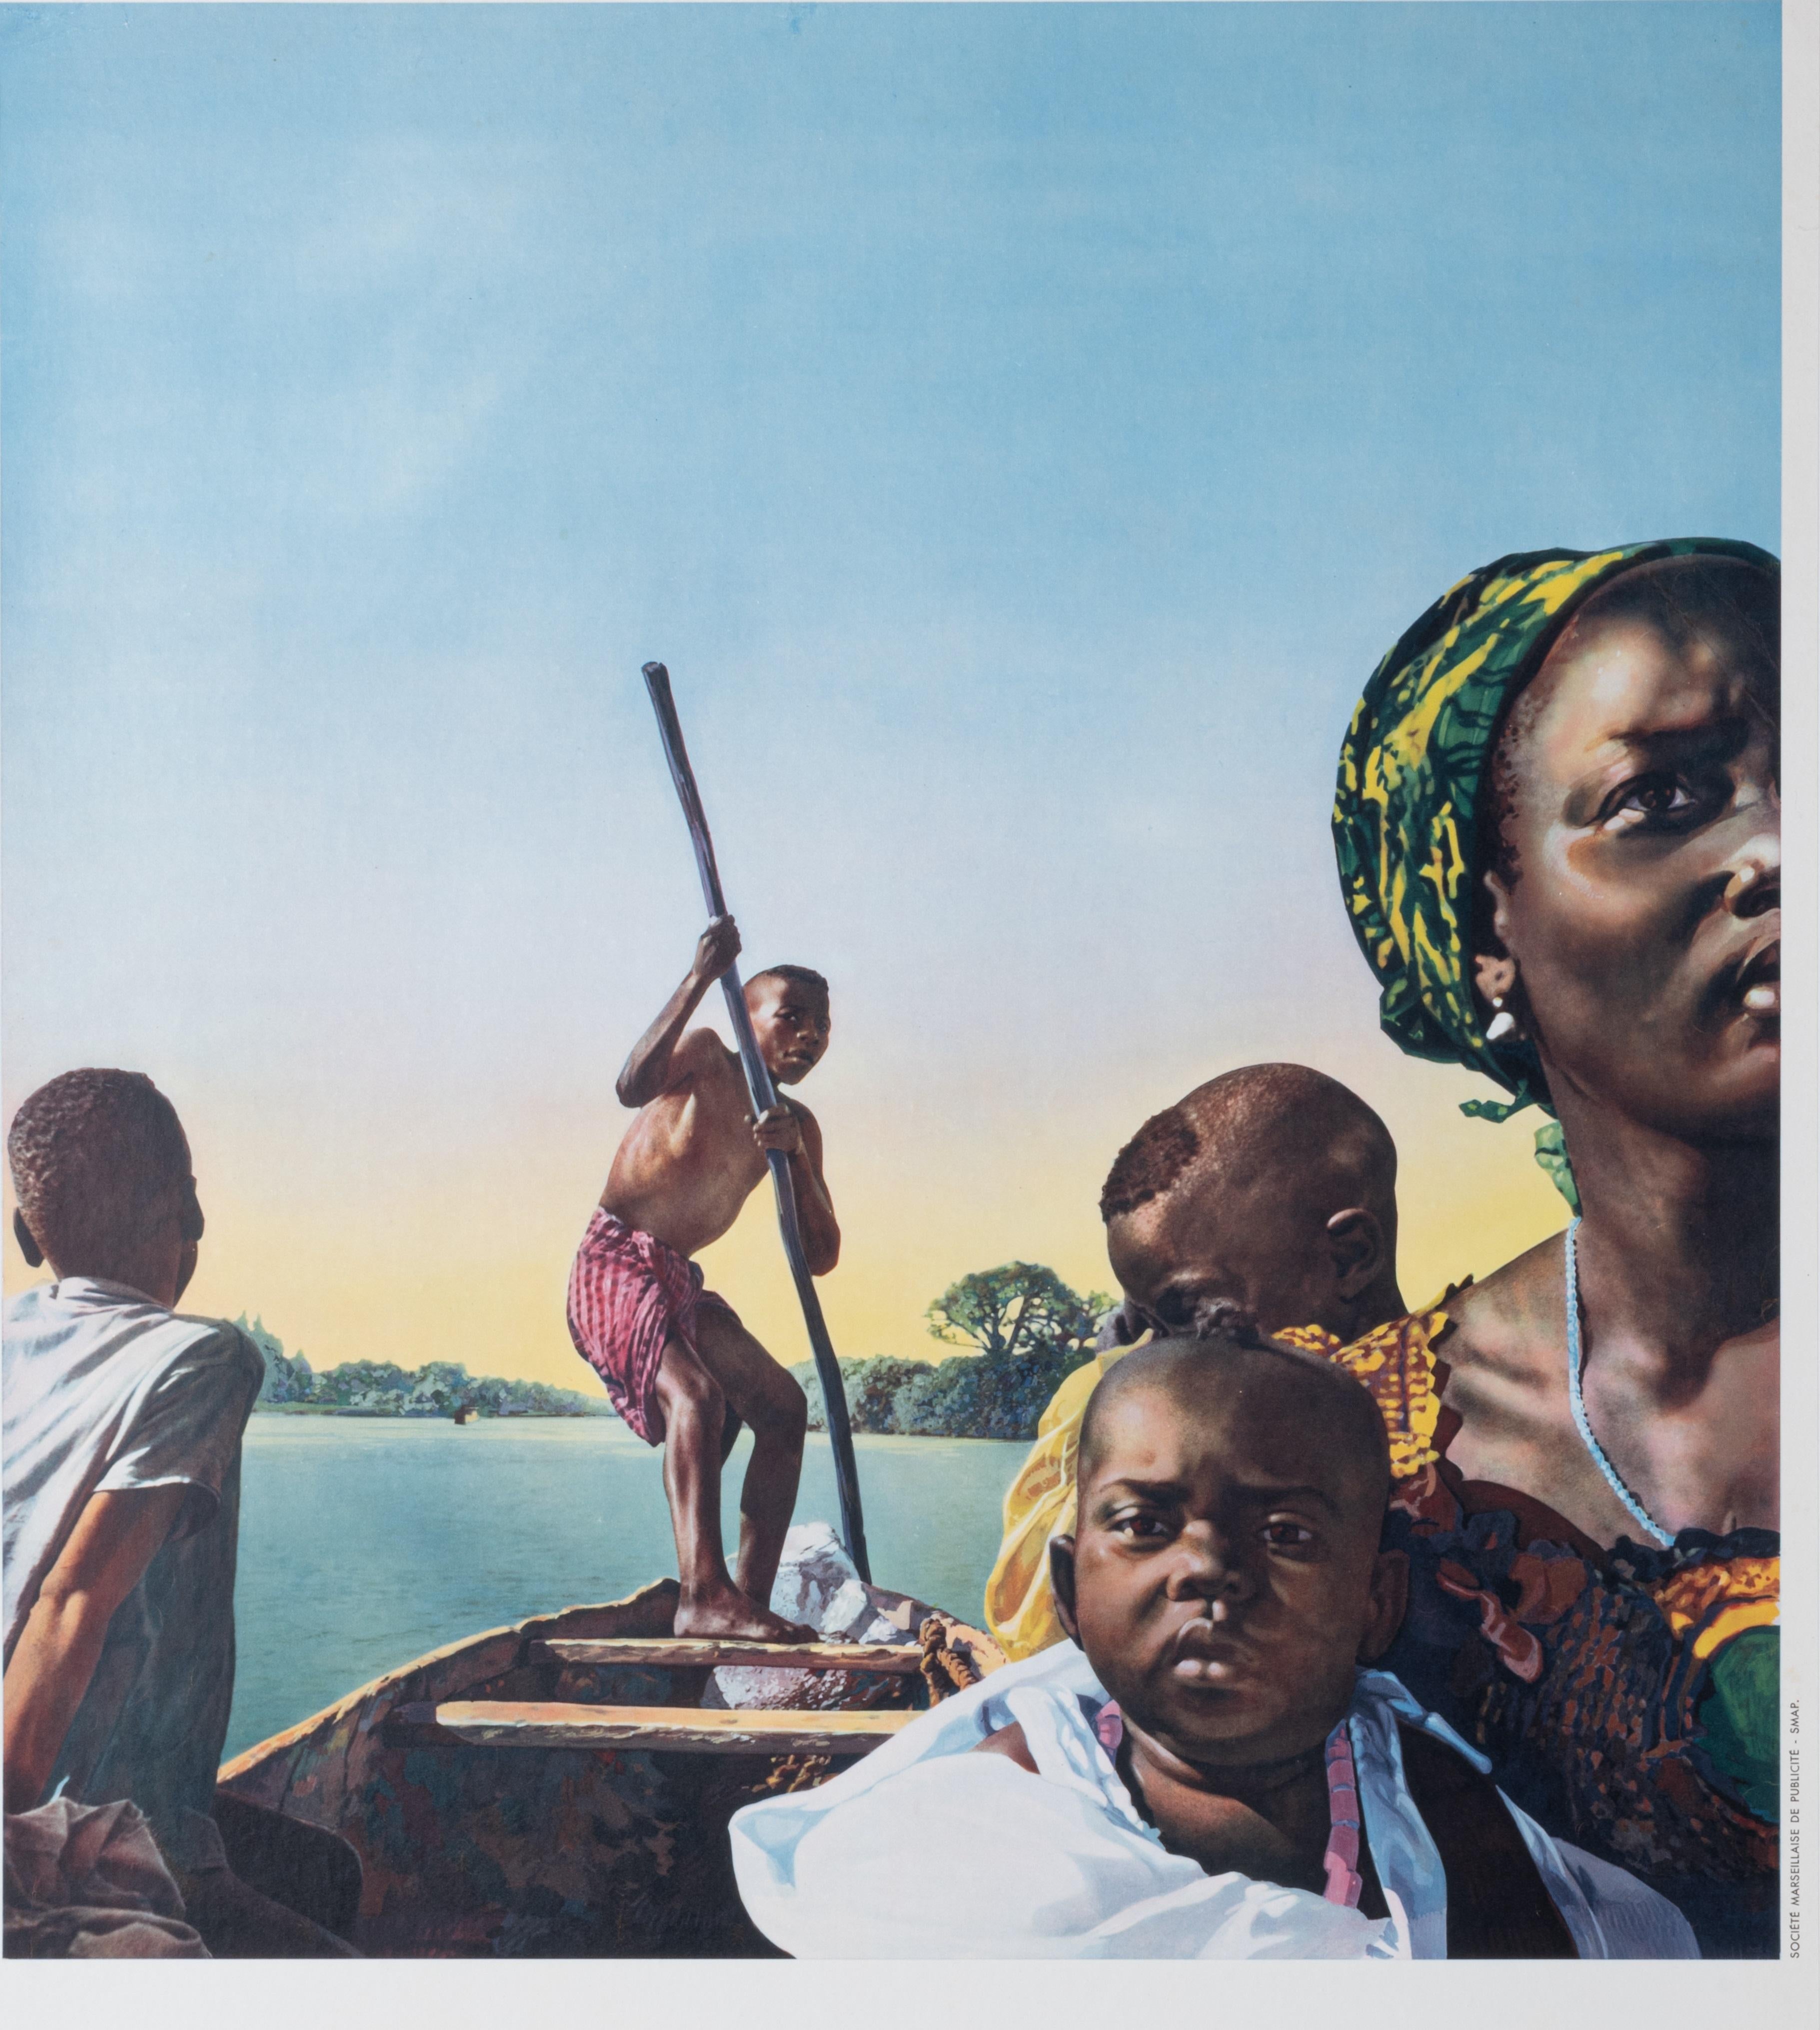 Plakat der Compagnie de Navigation Paquet, die um 1955 gegründet wurde, um den maritimen Tourismus im Senegal zu fördern.

Künstler:  Anonym  
Titel: Allez au Sénégal par les paquebots rapides de la compagnie de navigation Paquet
Datum: ca.